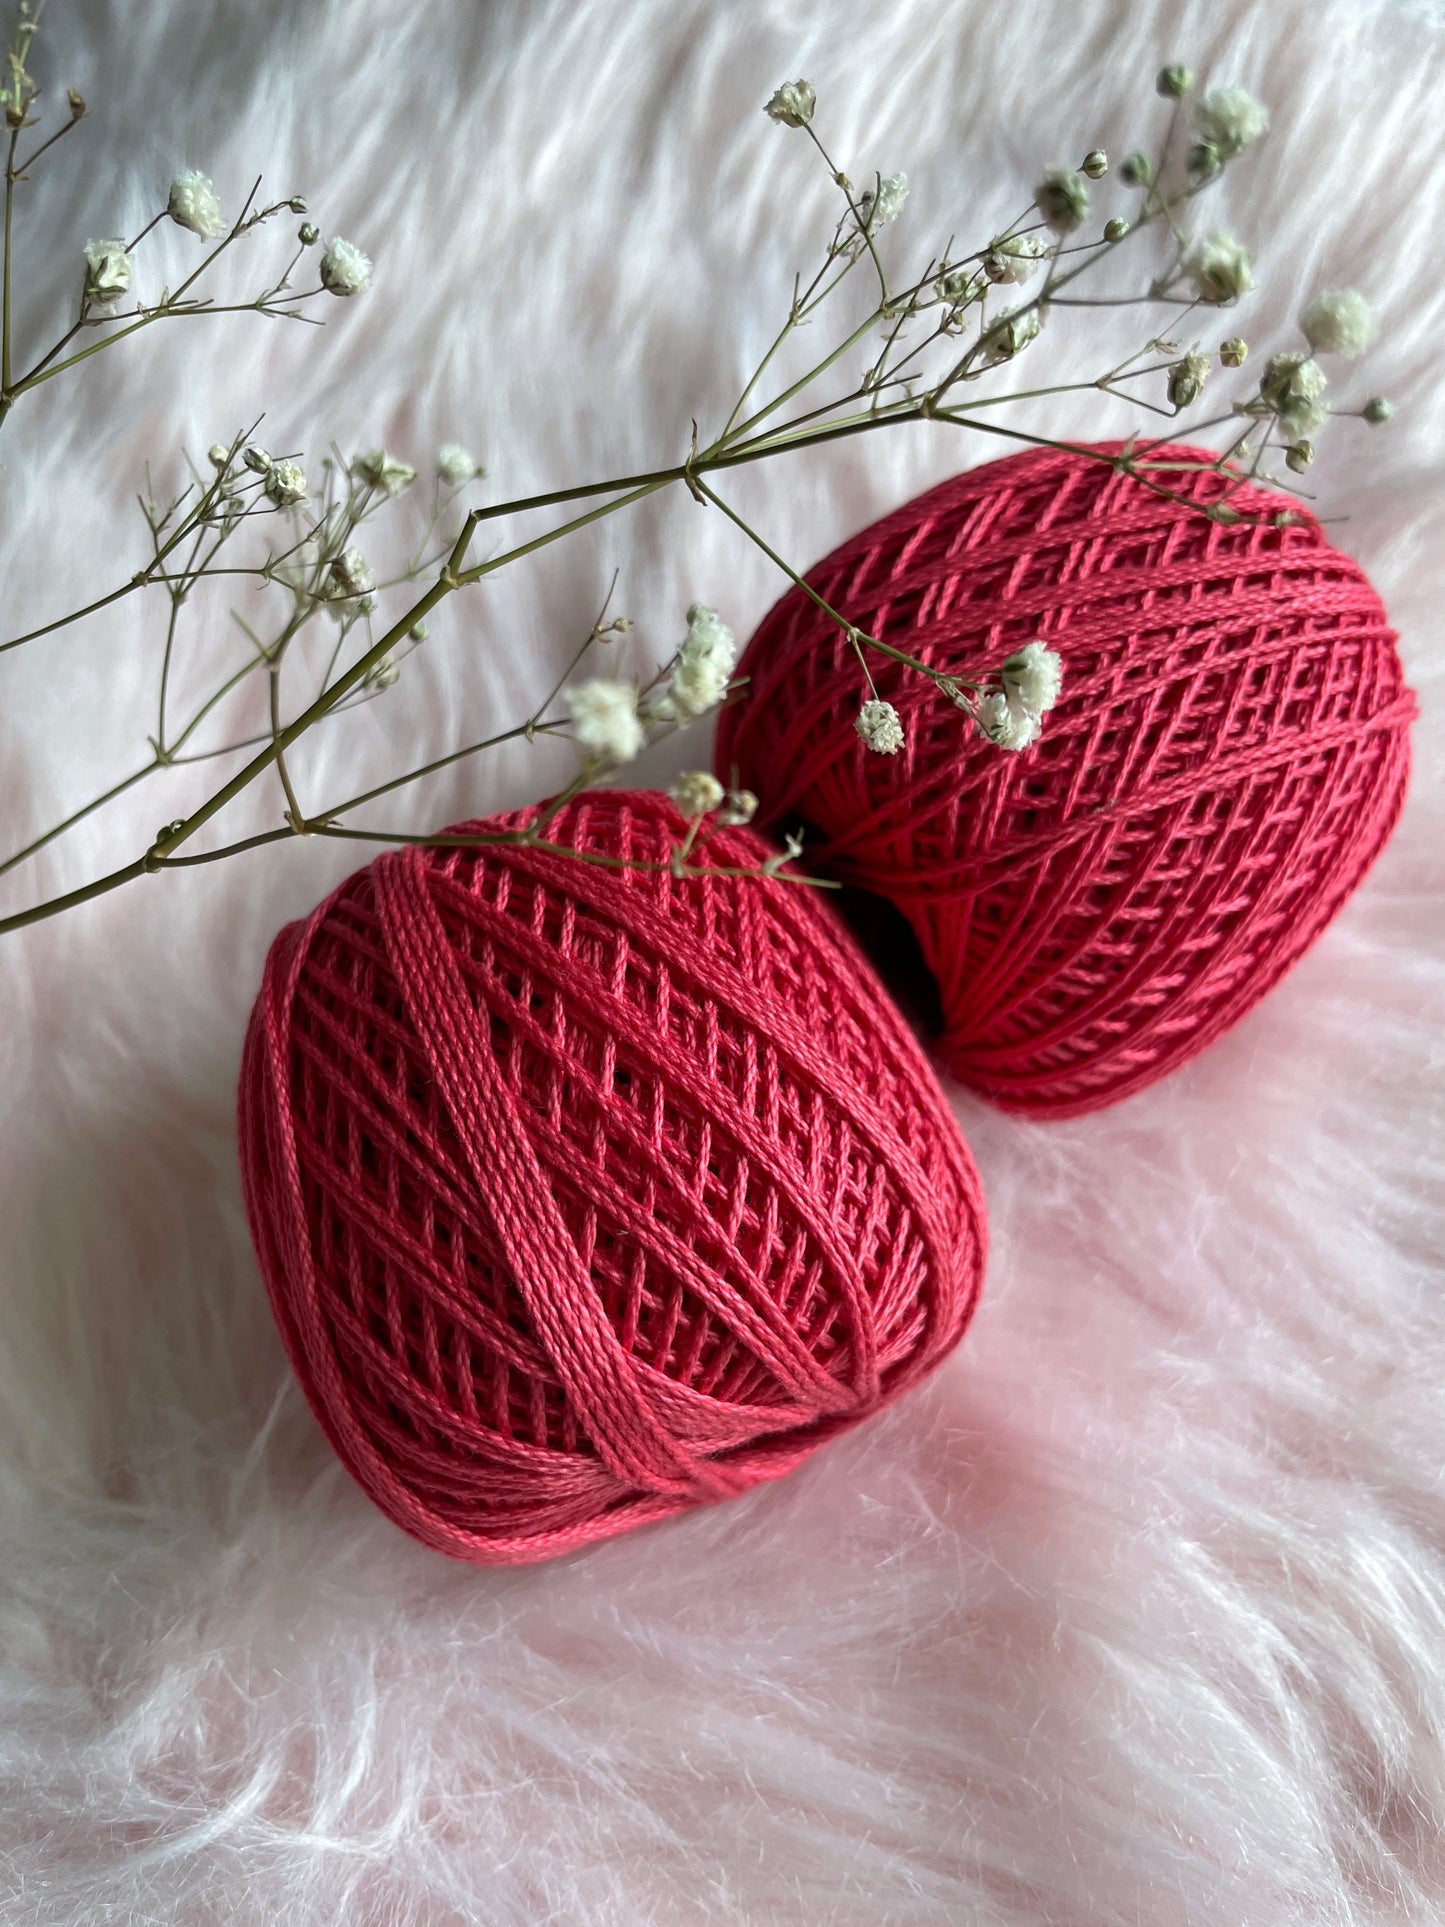 Knitting / Crochet Threads - Tomato Red - 50 gms 1 ball